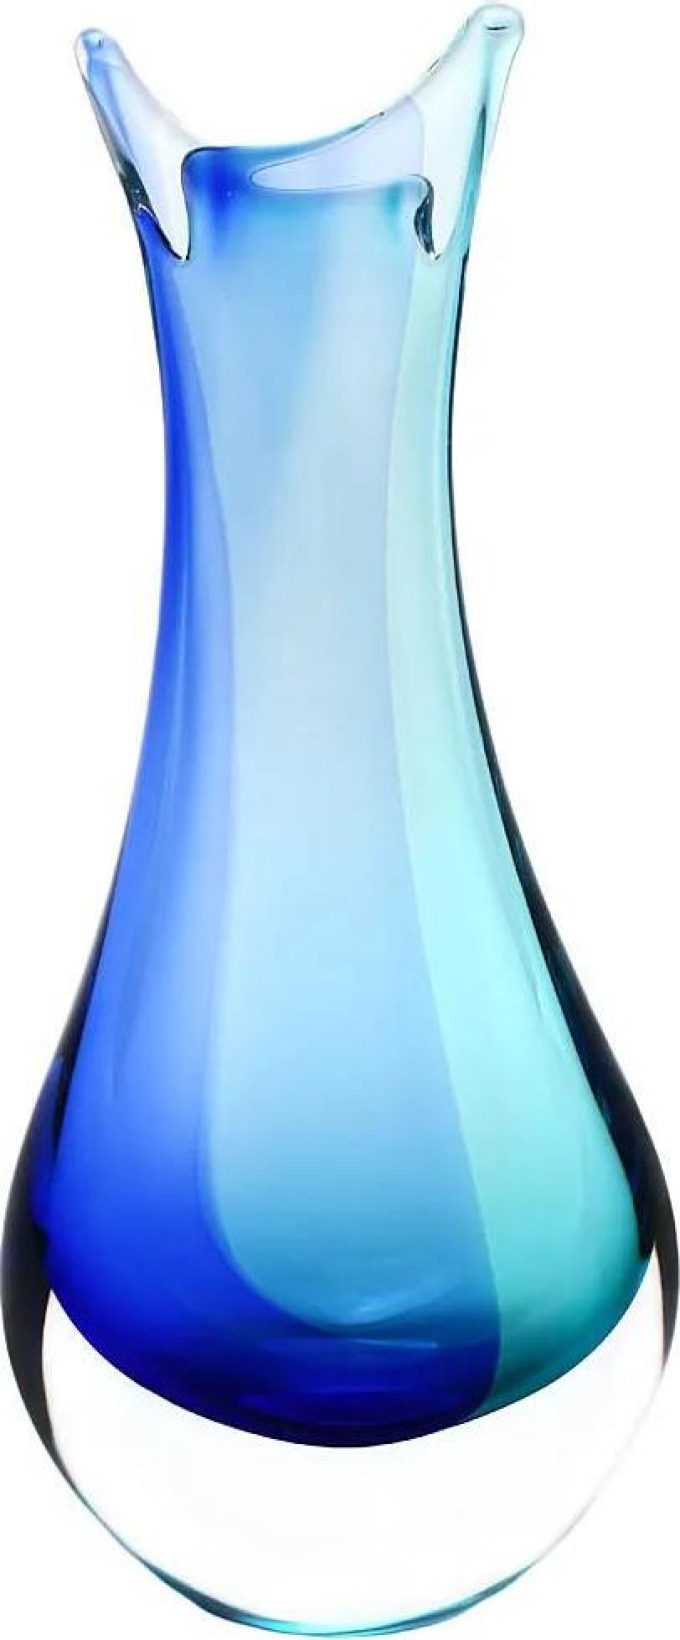 Skleněná váza hutní 09, modrá a tyrkysová, 21 cm | České hutní sklo od Artcristal Bohemia